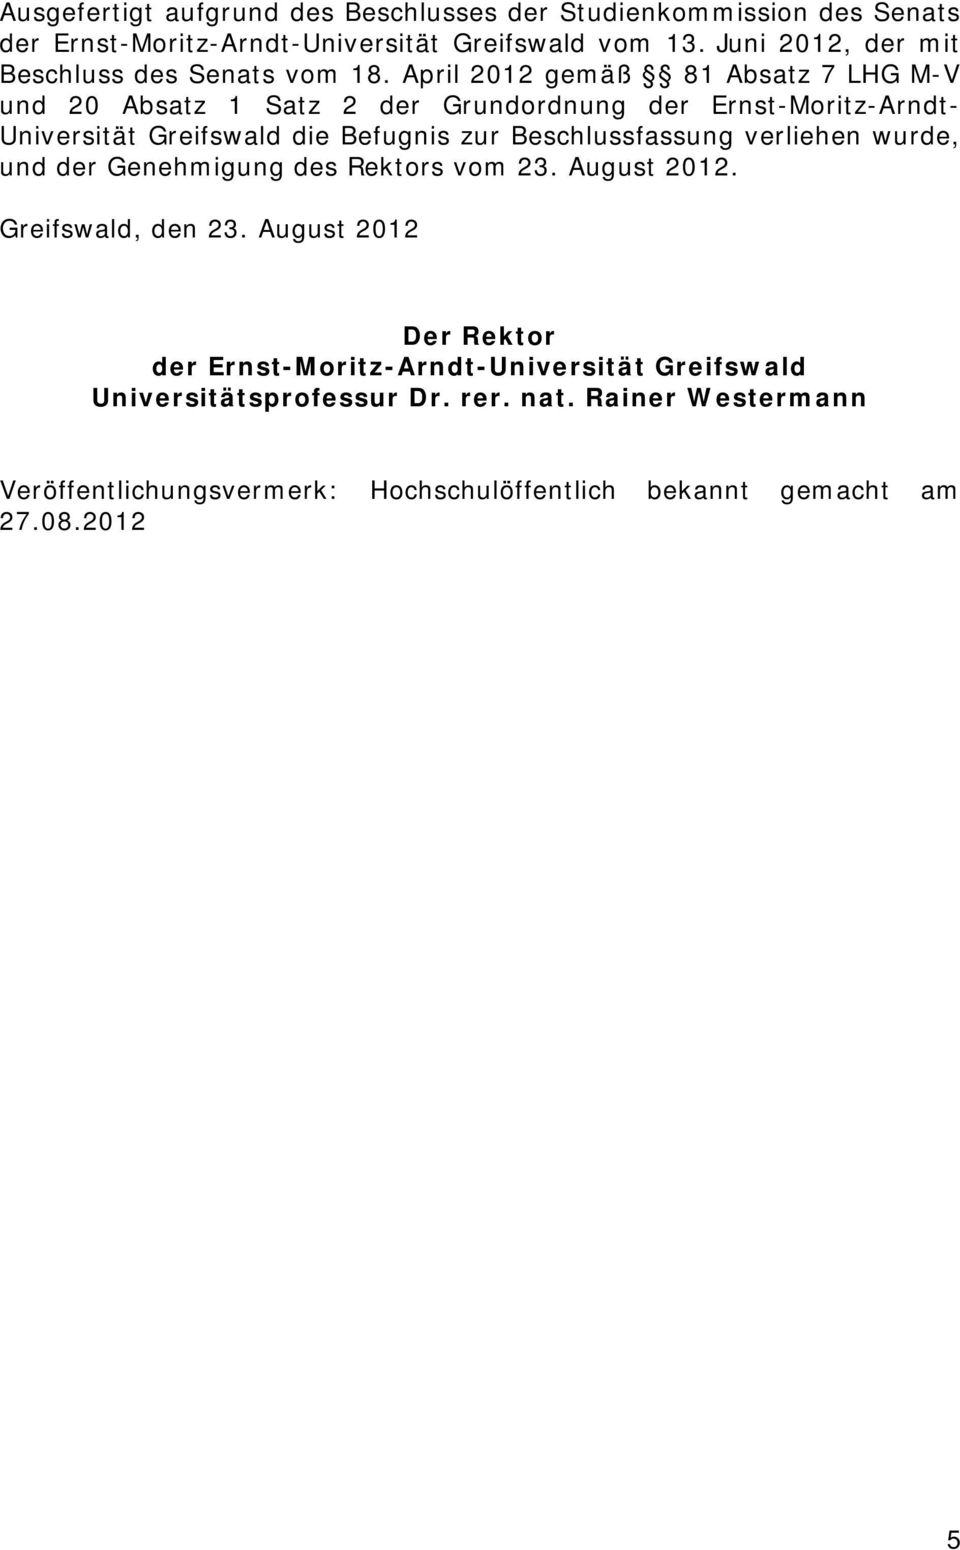 April 2012 gemäß 81 Absatz 7 LHG M-V und 20 Absatz 1 Satz 2 der Grundordnung der Ernst-Moritz-Arndt- Universität Greifswald die Befugnis zur